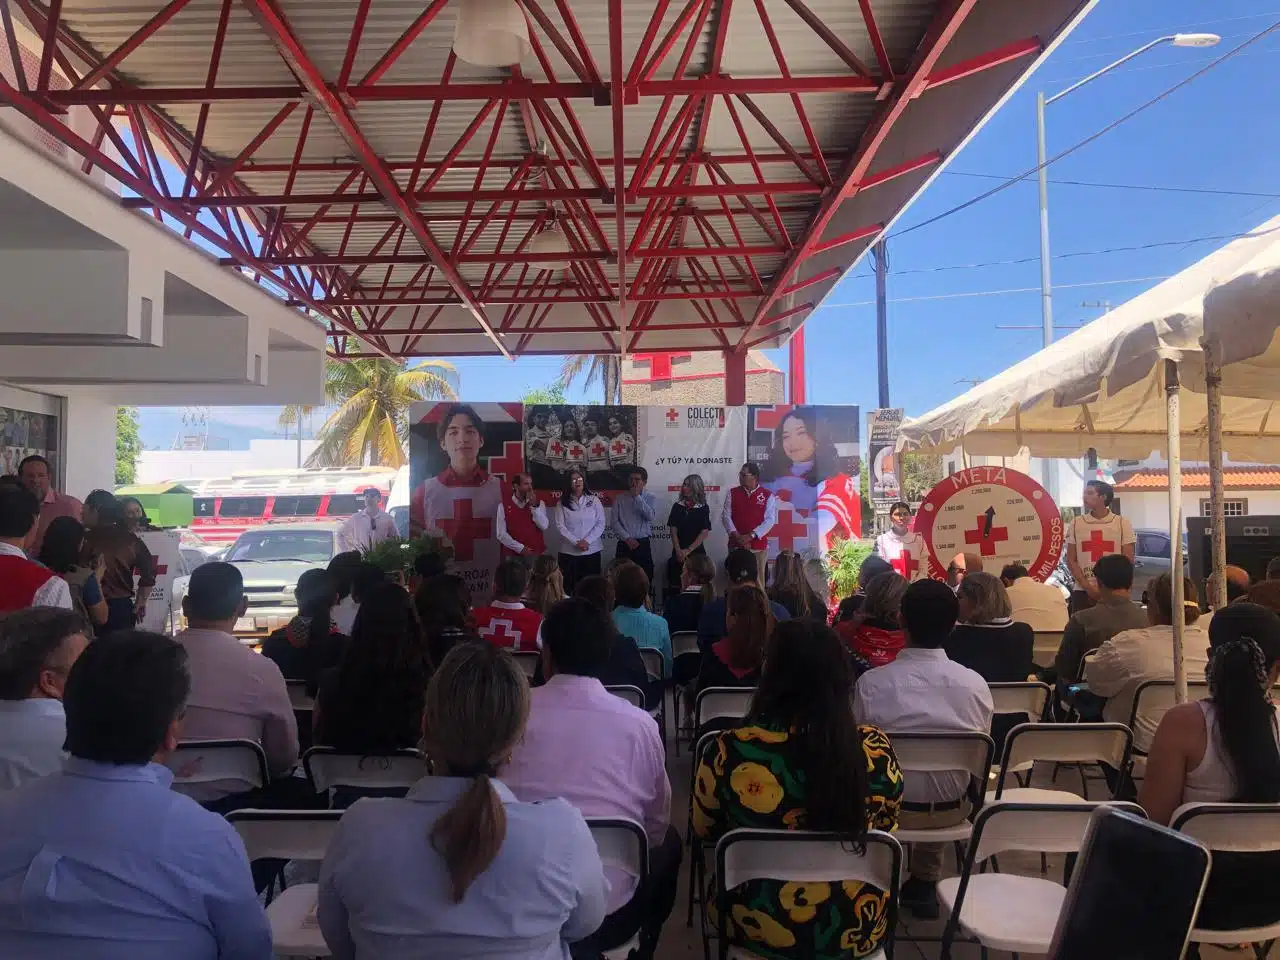 Martín Ahumada Quintero, presidente municipal de Guasave, presente en el arranque del evento de colecta de la Cruz Roja